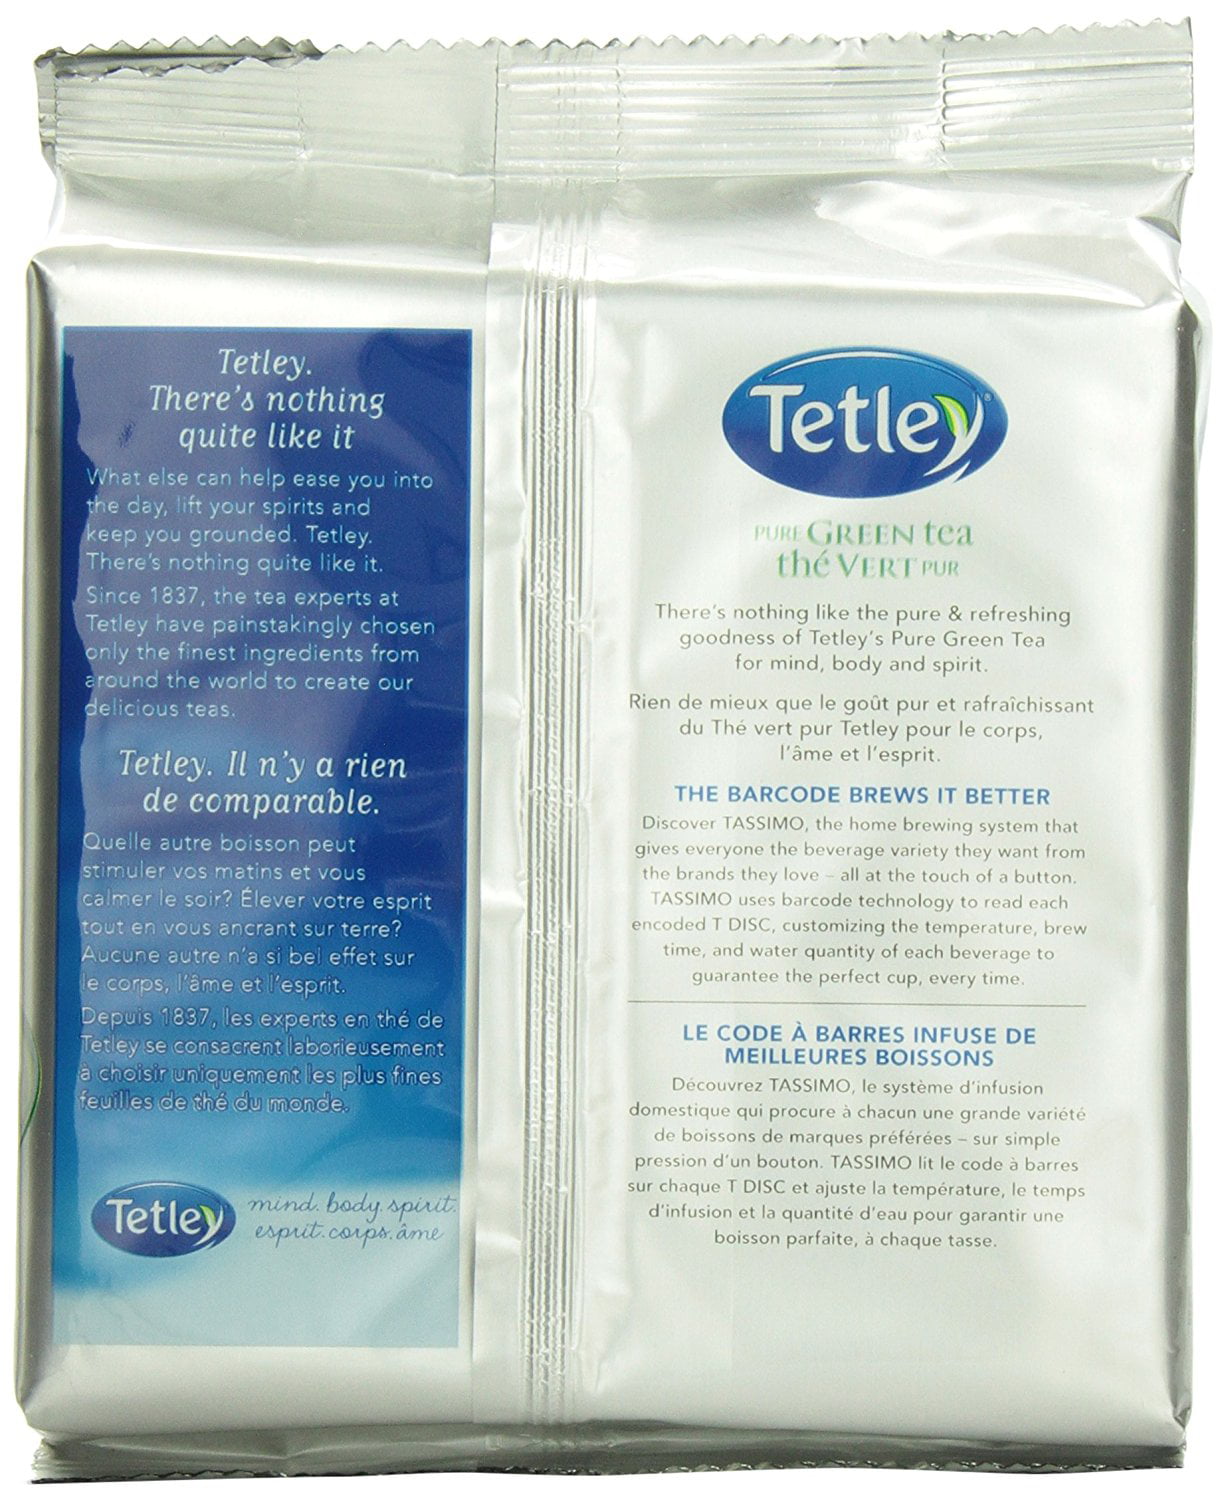 Tetley Pure Green Tea T Discs For Tassimo Hot Beverage System 56 Count 4x6oz Walmart Com Walmart Com